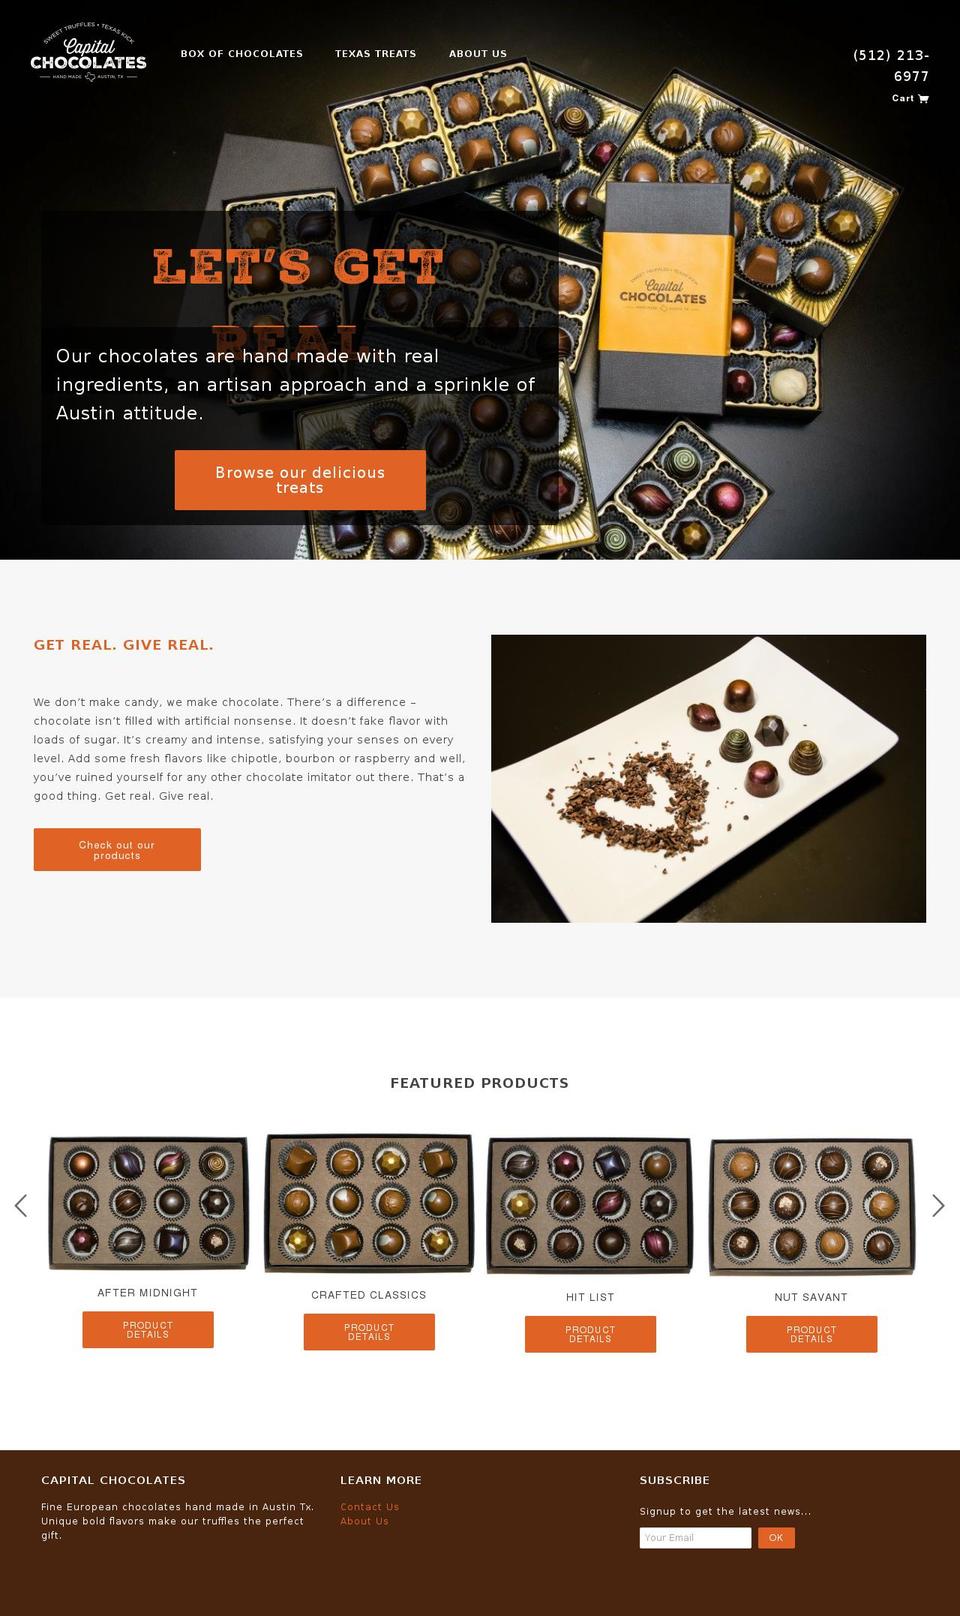 capitalchocolates.com shopify website screenshot